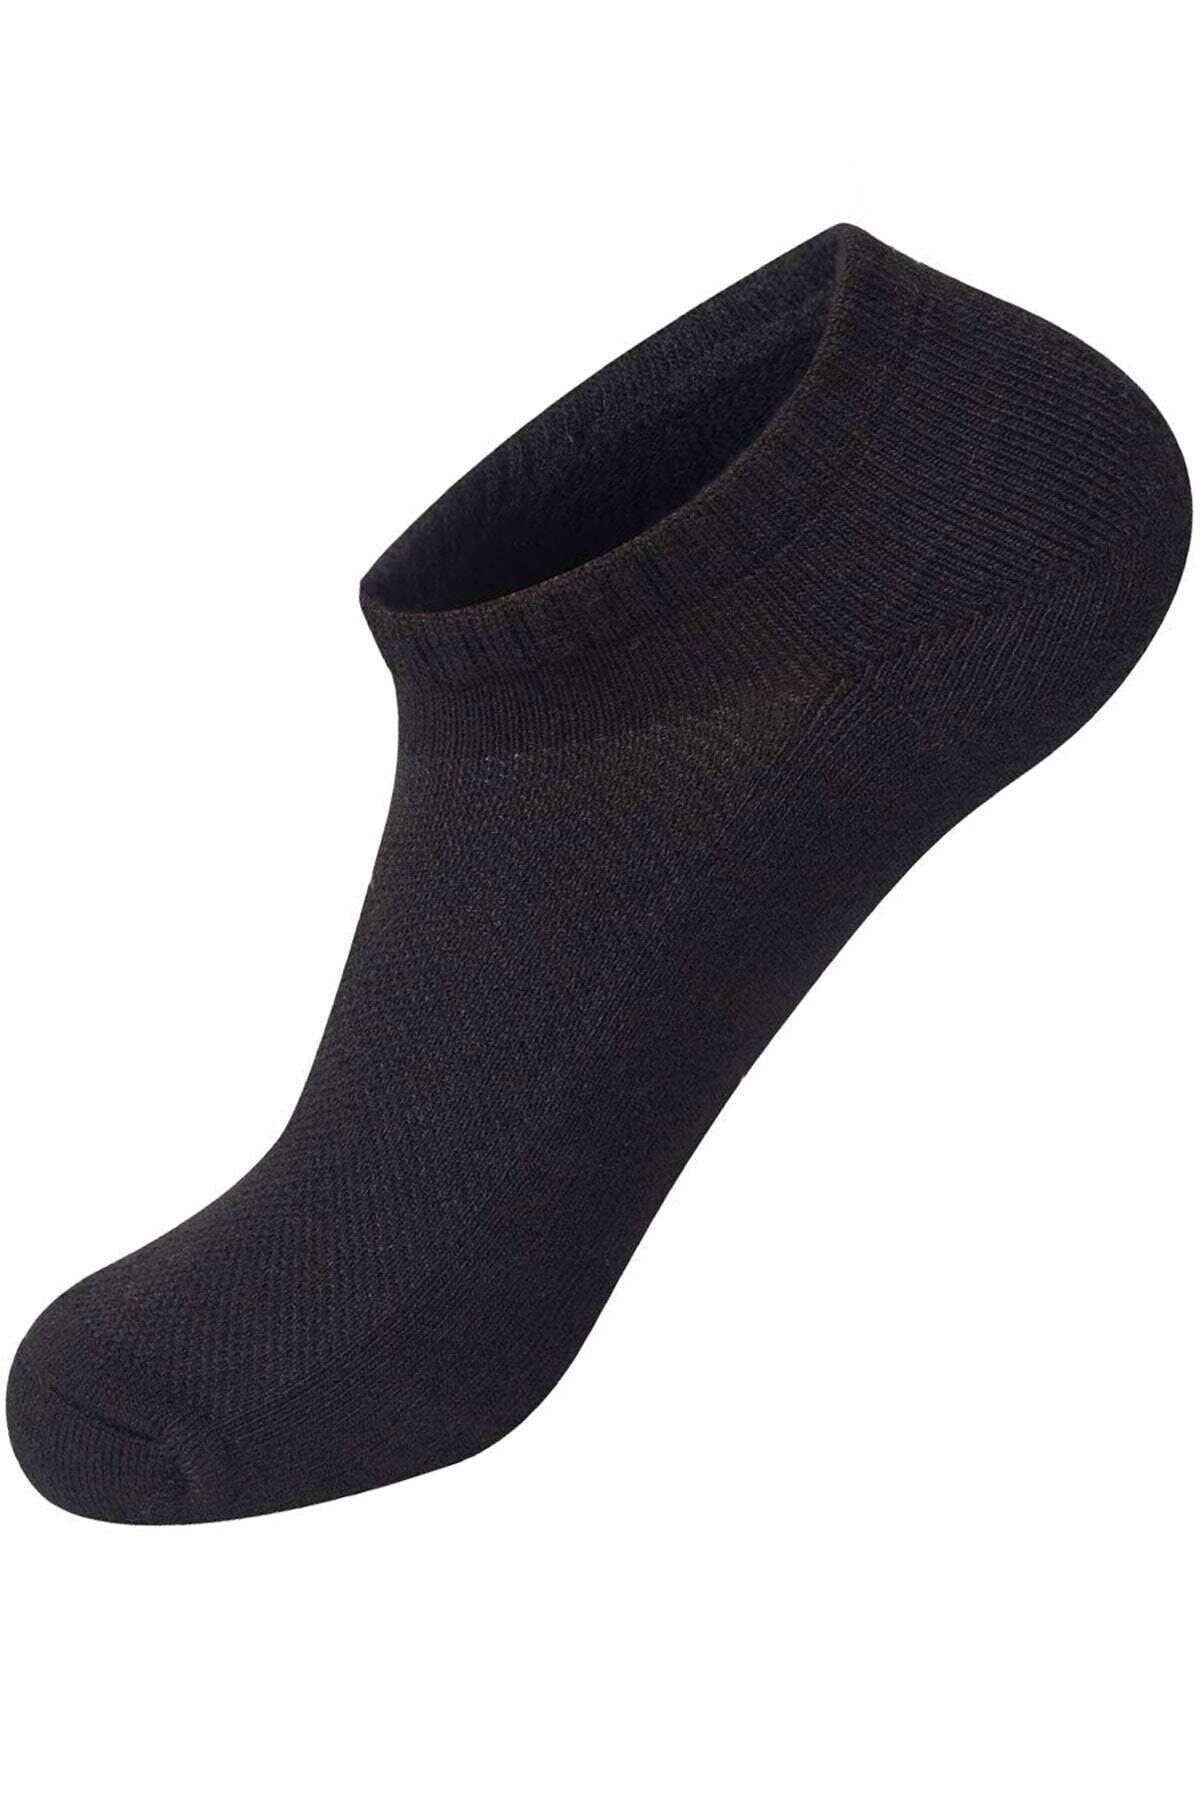 Pars Unısex 6'lı Sporcular Için Uygun Burun Kısmı Dikişsiz %80 Pamuk Snekars Çorap